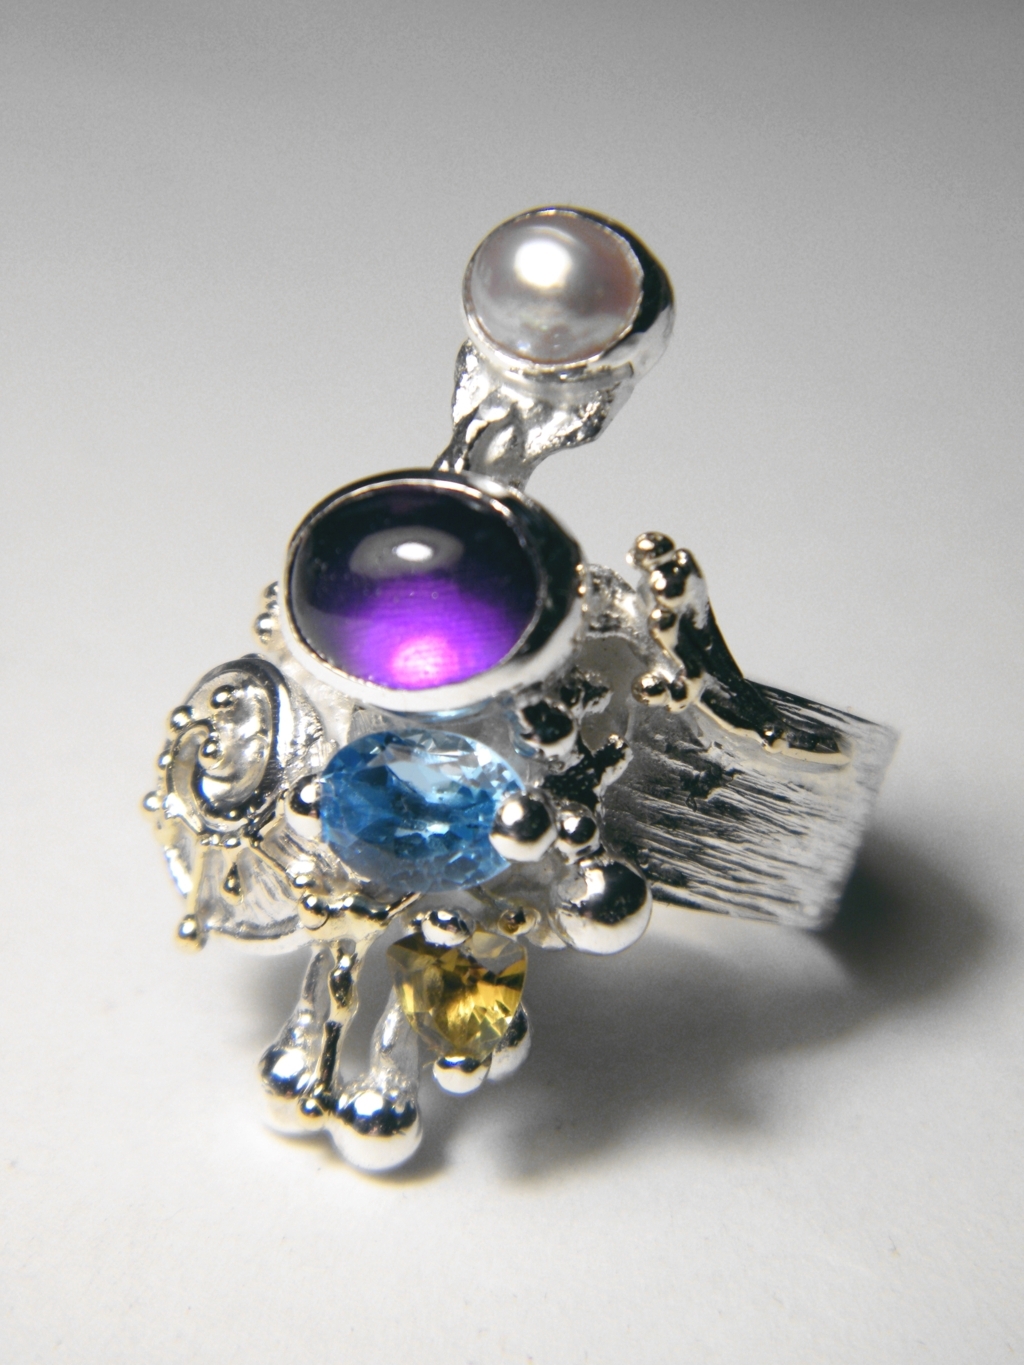 módní šperky, modní styl, sběratelská položka, prsten ze stříbra a zlata, prsten s ametystem a modrým topásem, prsten s ametystem a modrým topásem, prsten s ametystem a perlou, prsten s modrým topásem a perlou, Gregory Pyra Piro prstýnek 4020